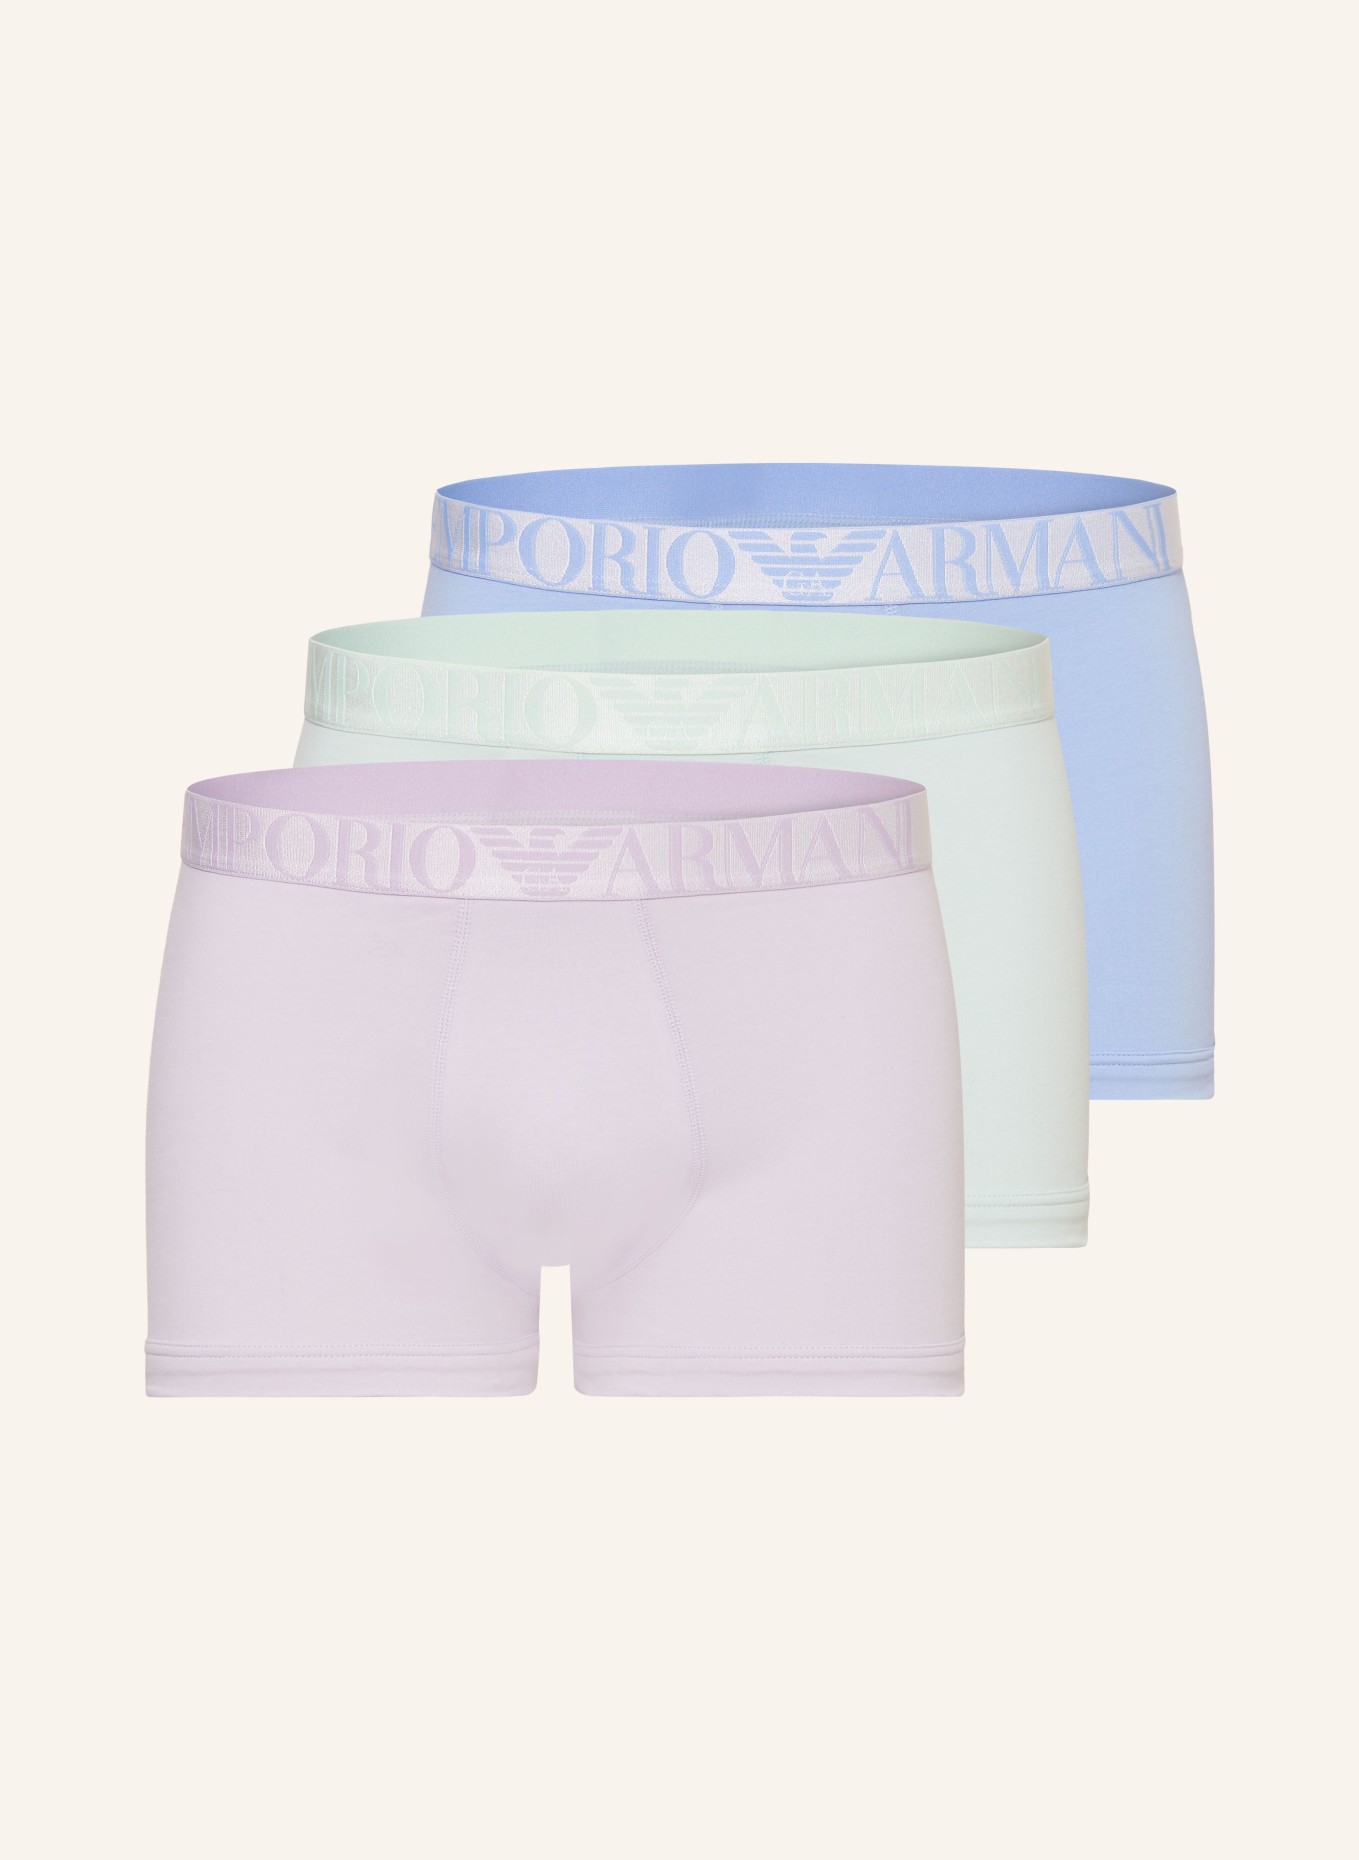 EMPORIO ARMANI 3-pack boxer shorts, Color: LIGHT PURPLE/ MINT/ LIGHT BLUE (Image 1)